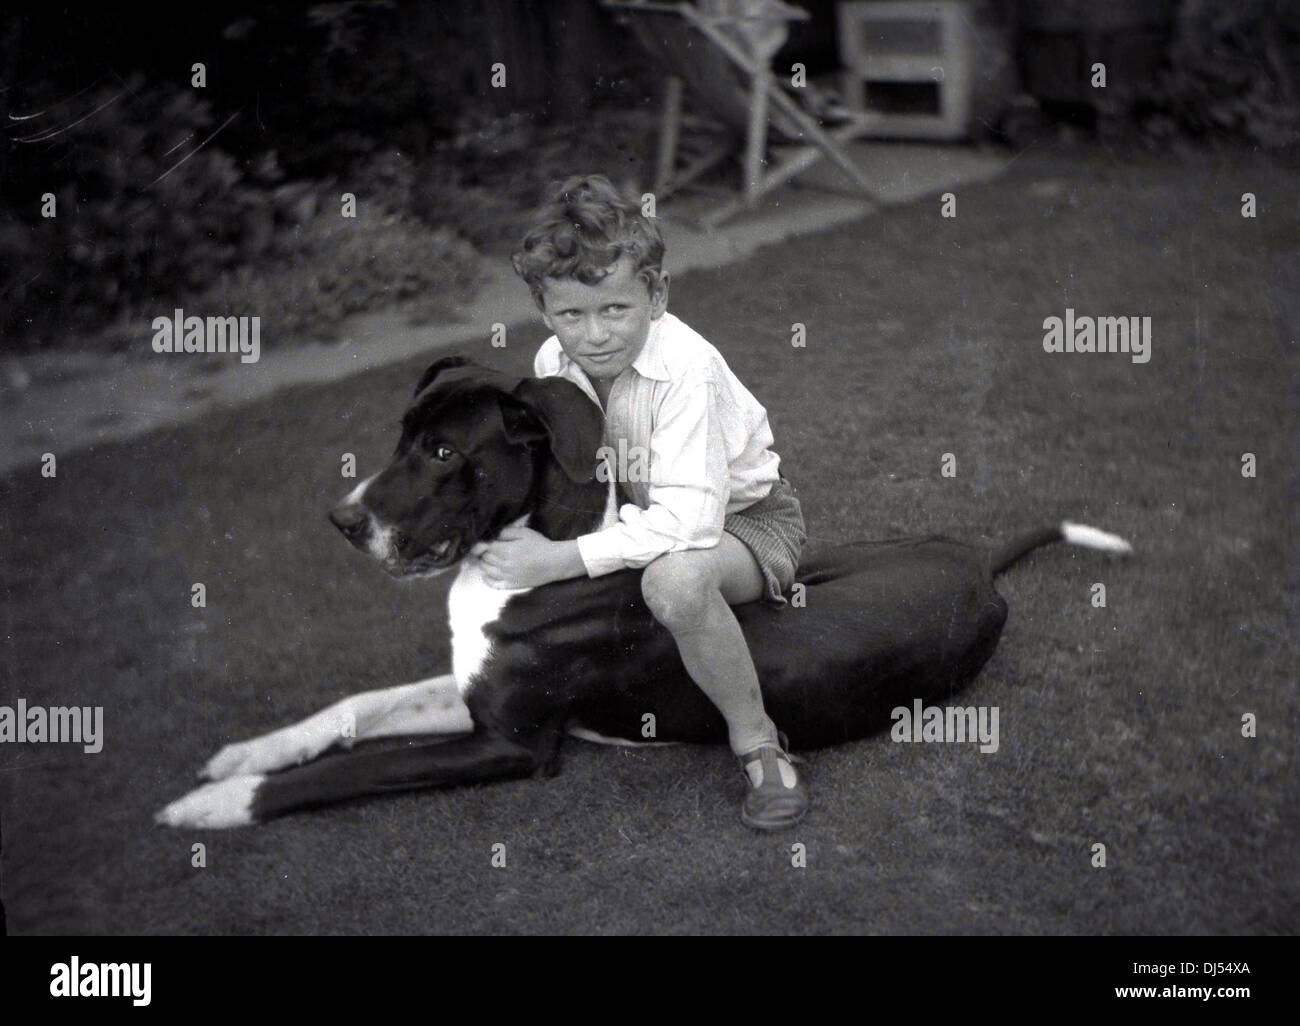 Photo historique de 1930s, un jeune garçon assis sur son chien extérieur dans un jardin, lui donnant un câlin. Banque D'Images